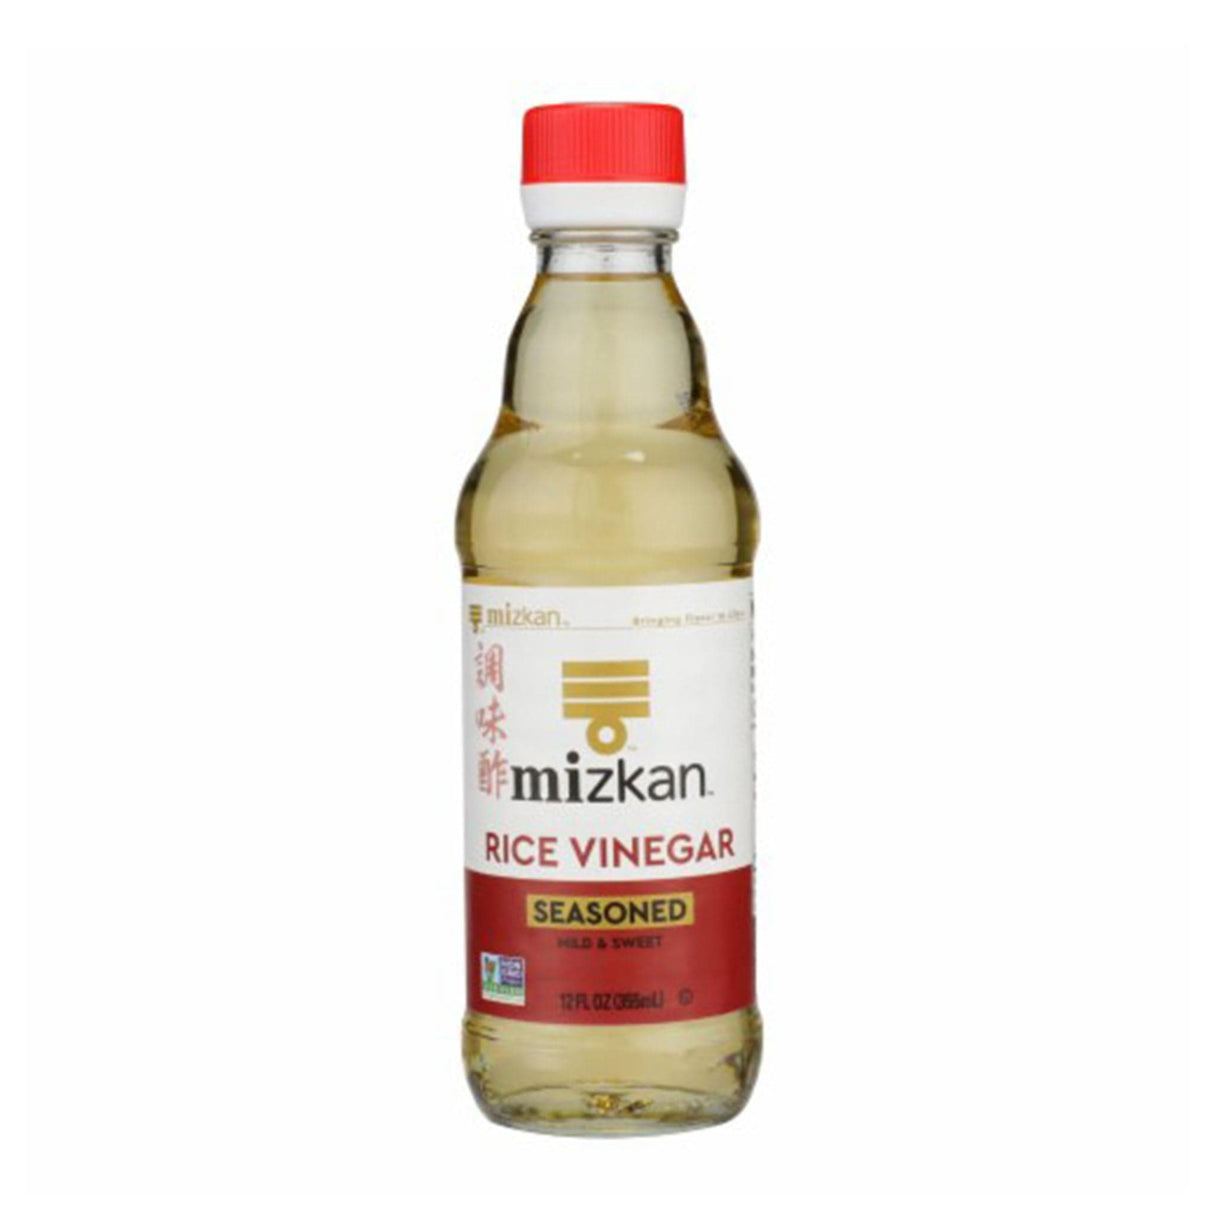 Mizkan Seasoned Rice Vinegar